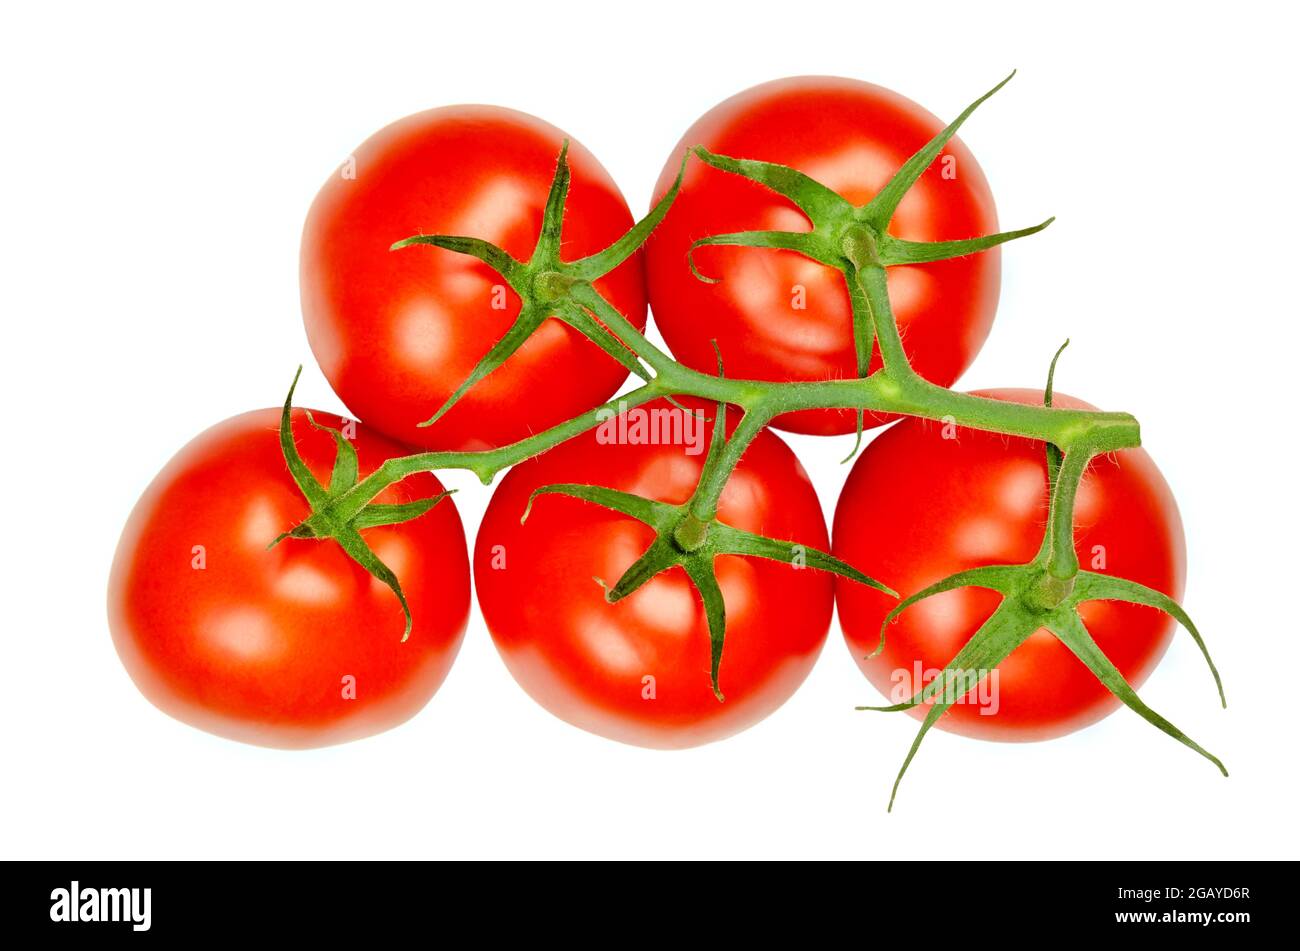 Rispe Tomaten von oben, isoliert über weiß. Frische, reife, rote und rohe Früchte von Solanum lycopersicum, einer reichen Quelle des Umami-Geschmacks. Stockfoto